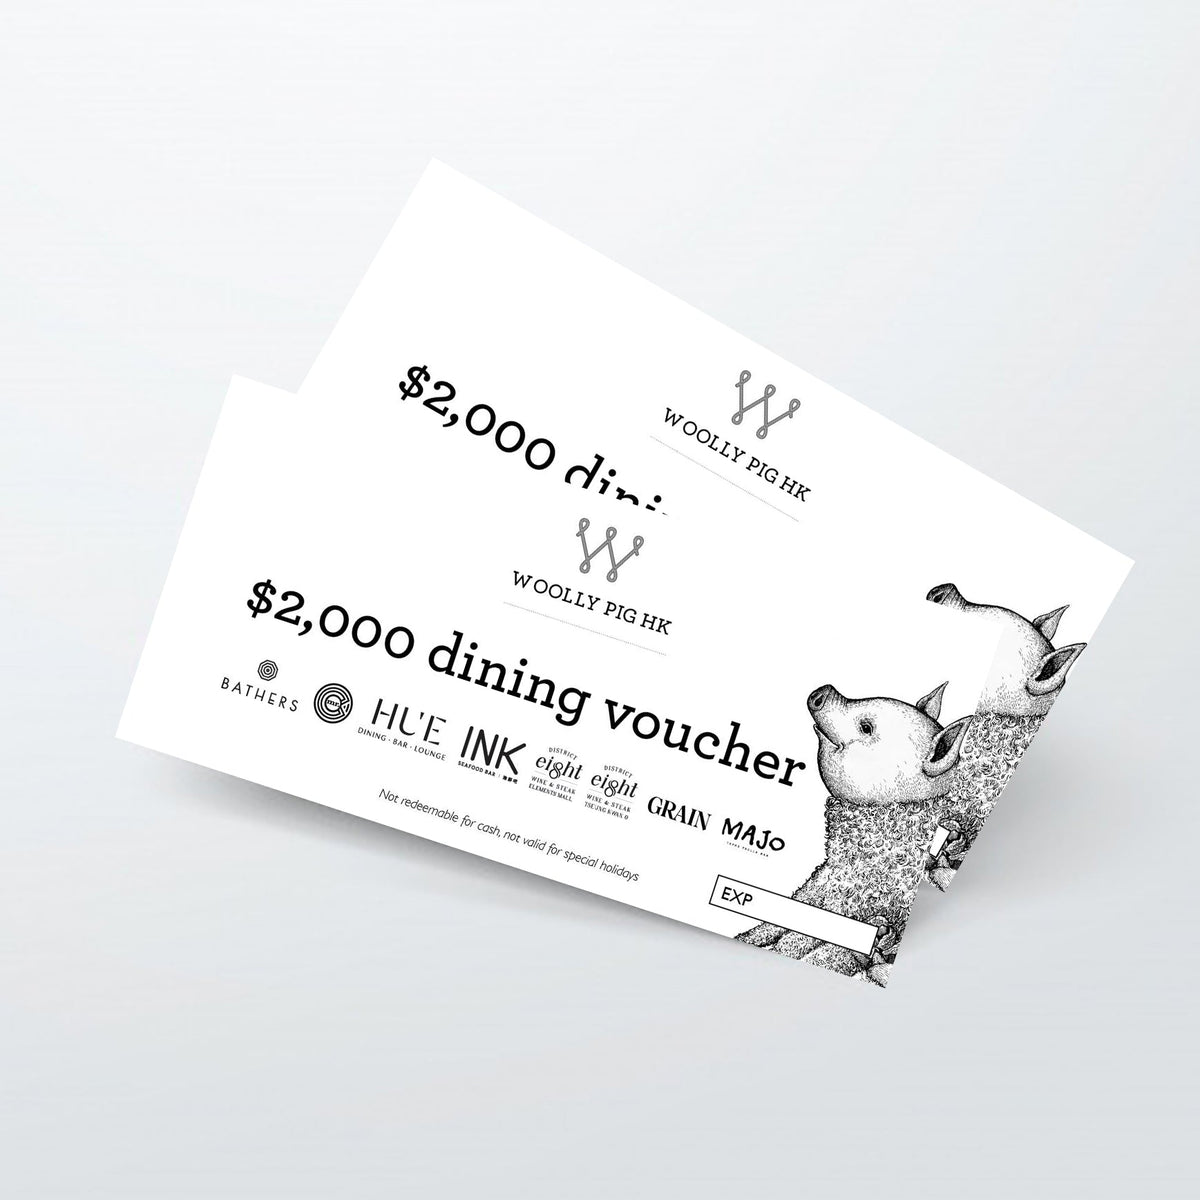 Dining Voucher $2000 - Woolly Pig Hong Kong